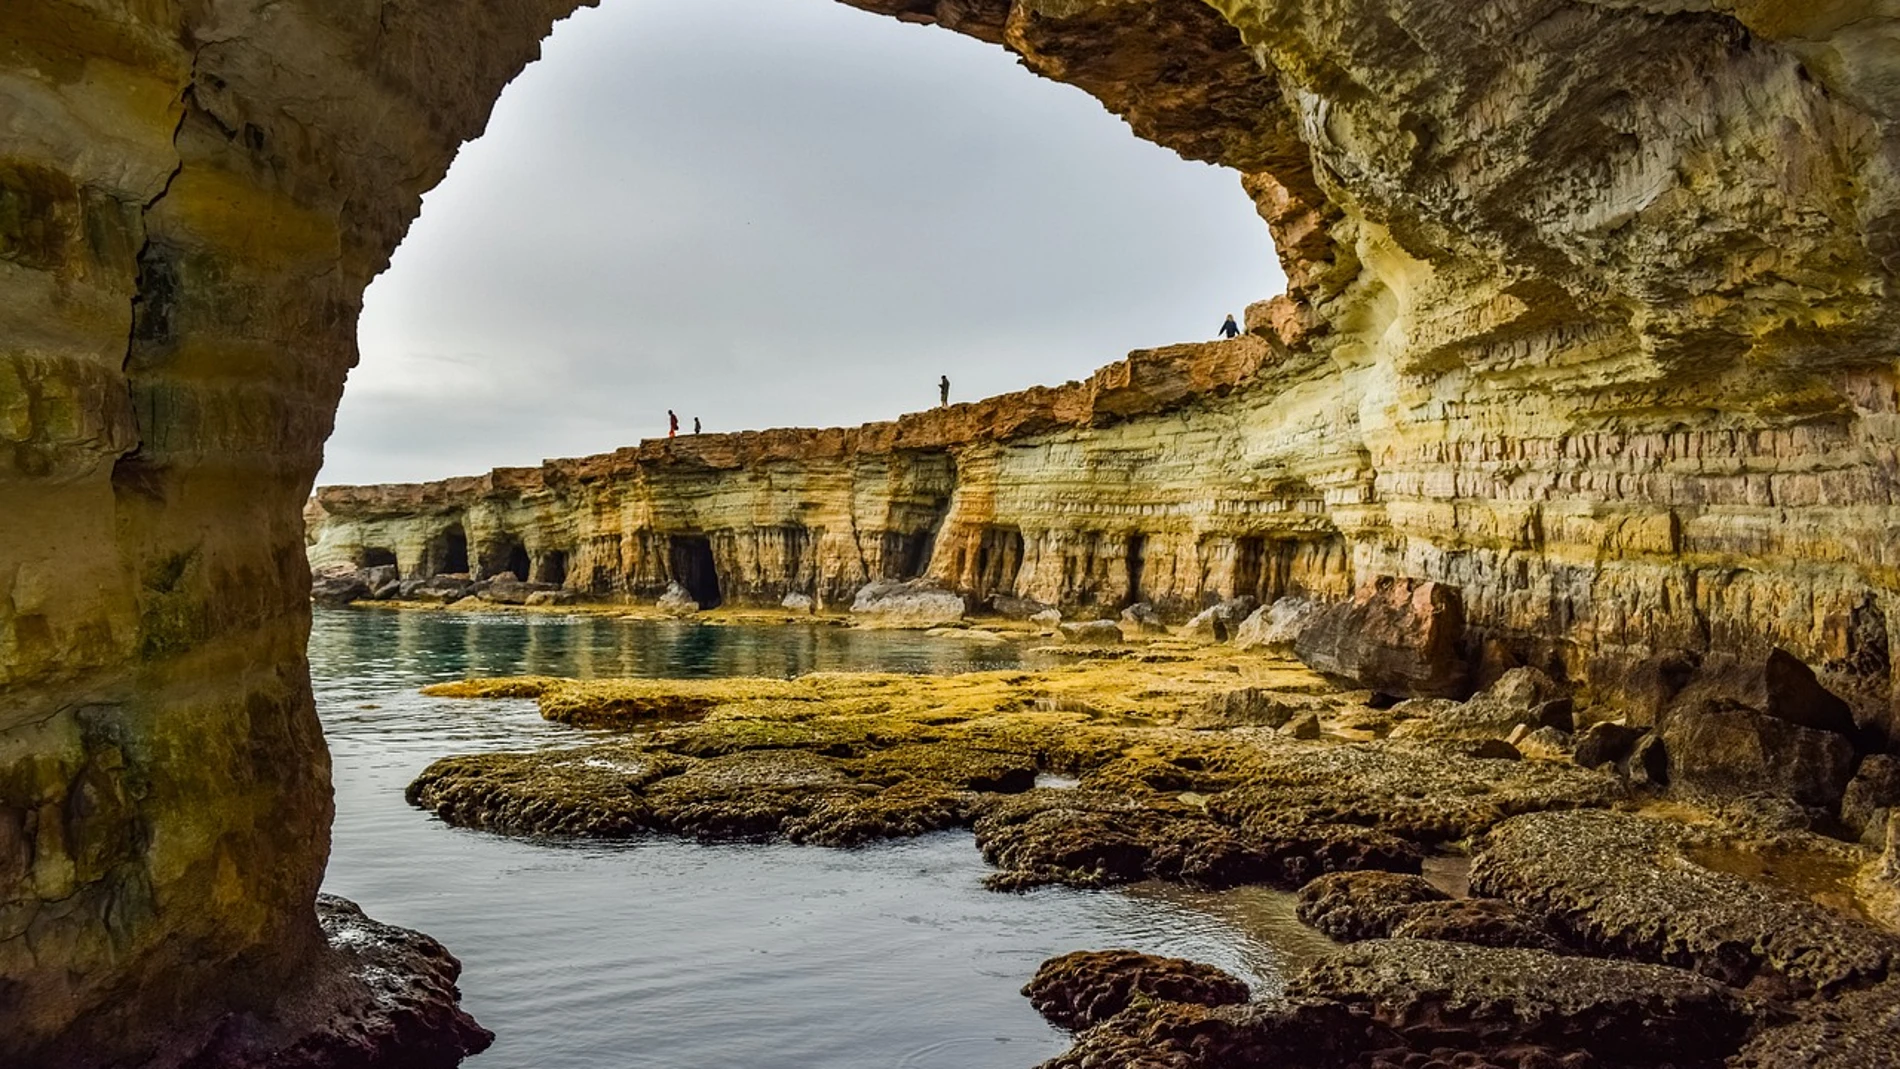 Las cuevas son paisajes únicos y naturales creadas debido a la erosión del agua